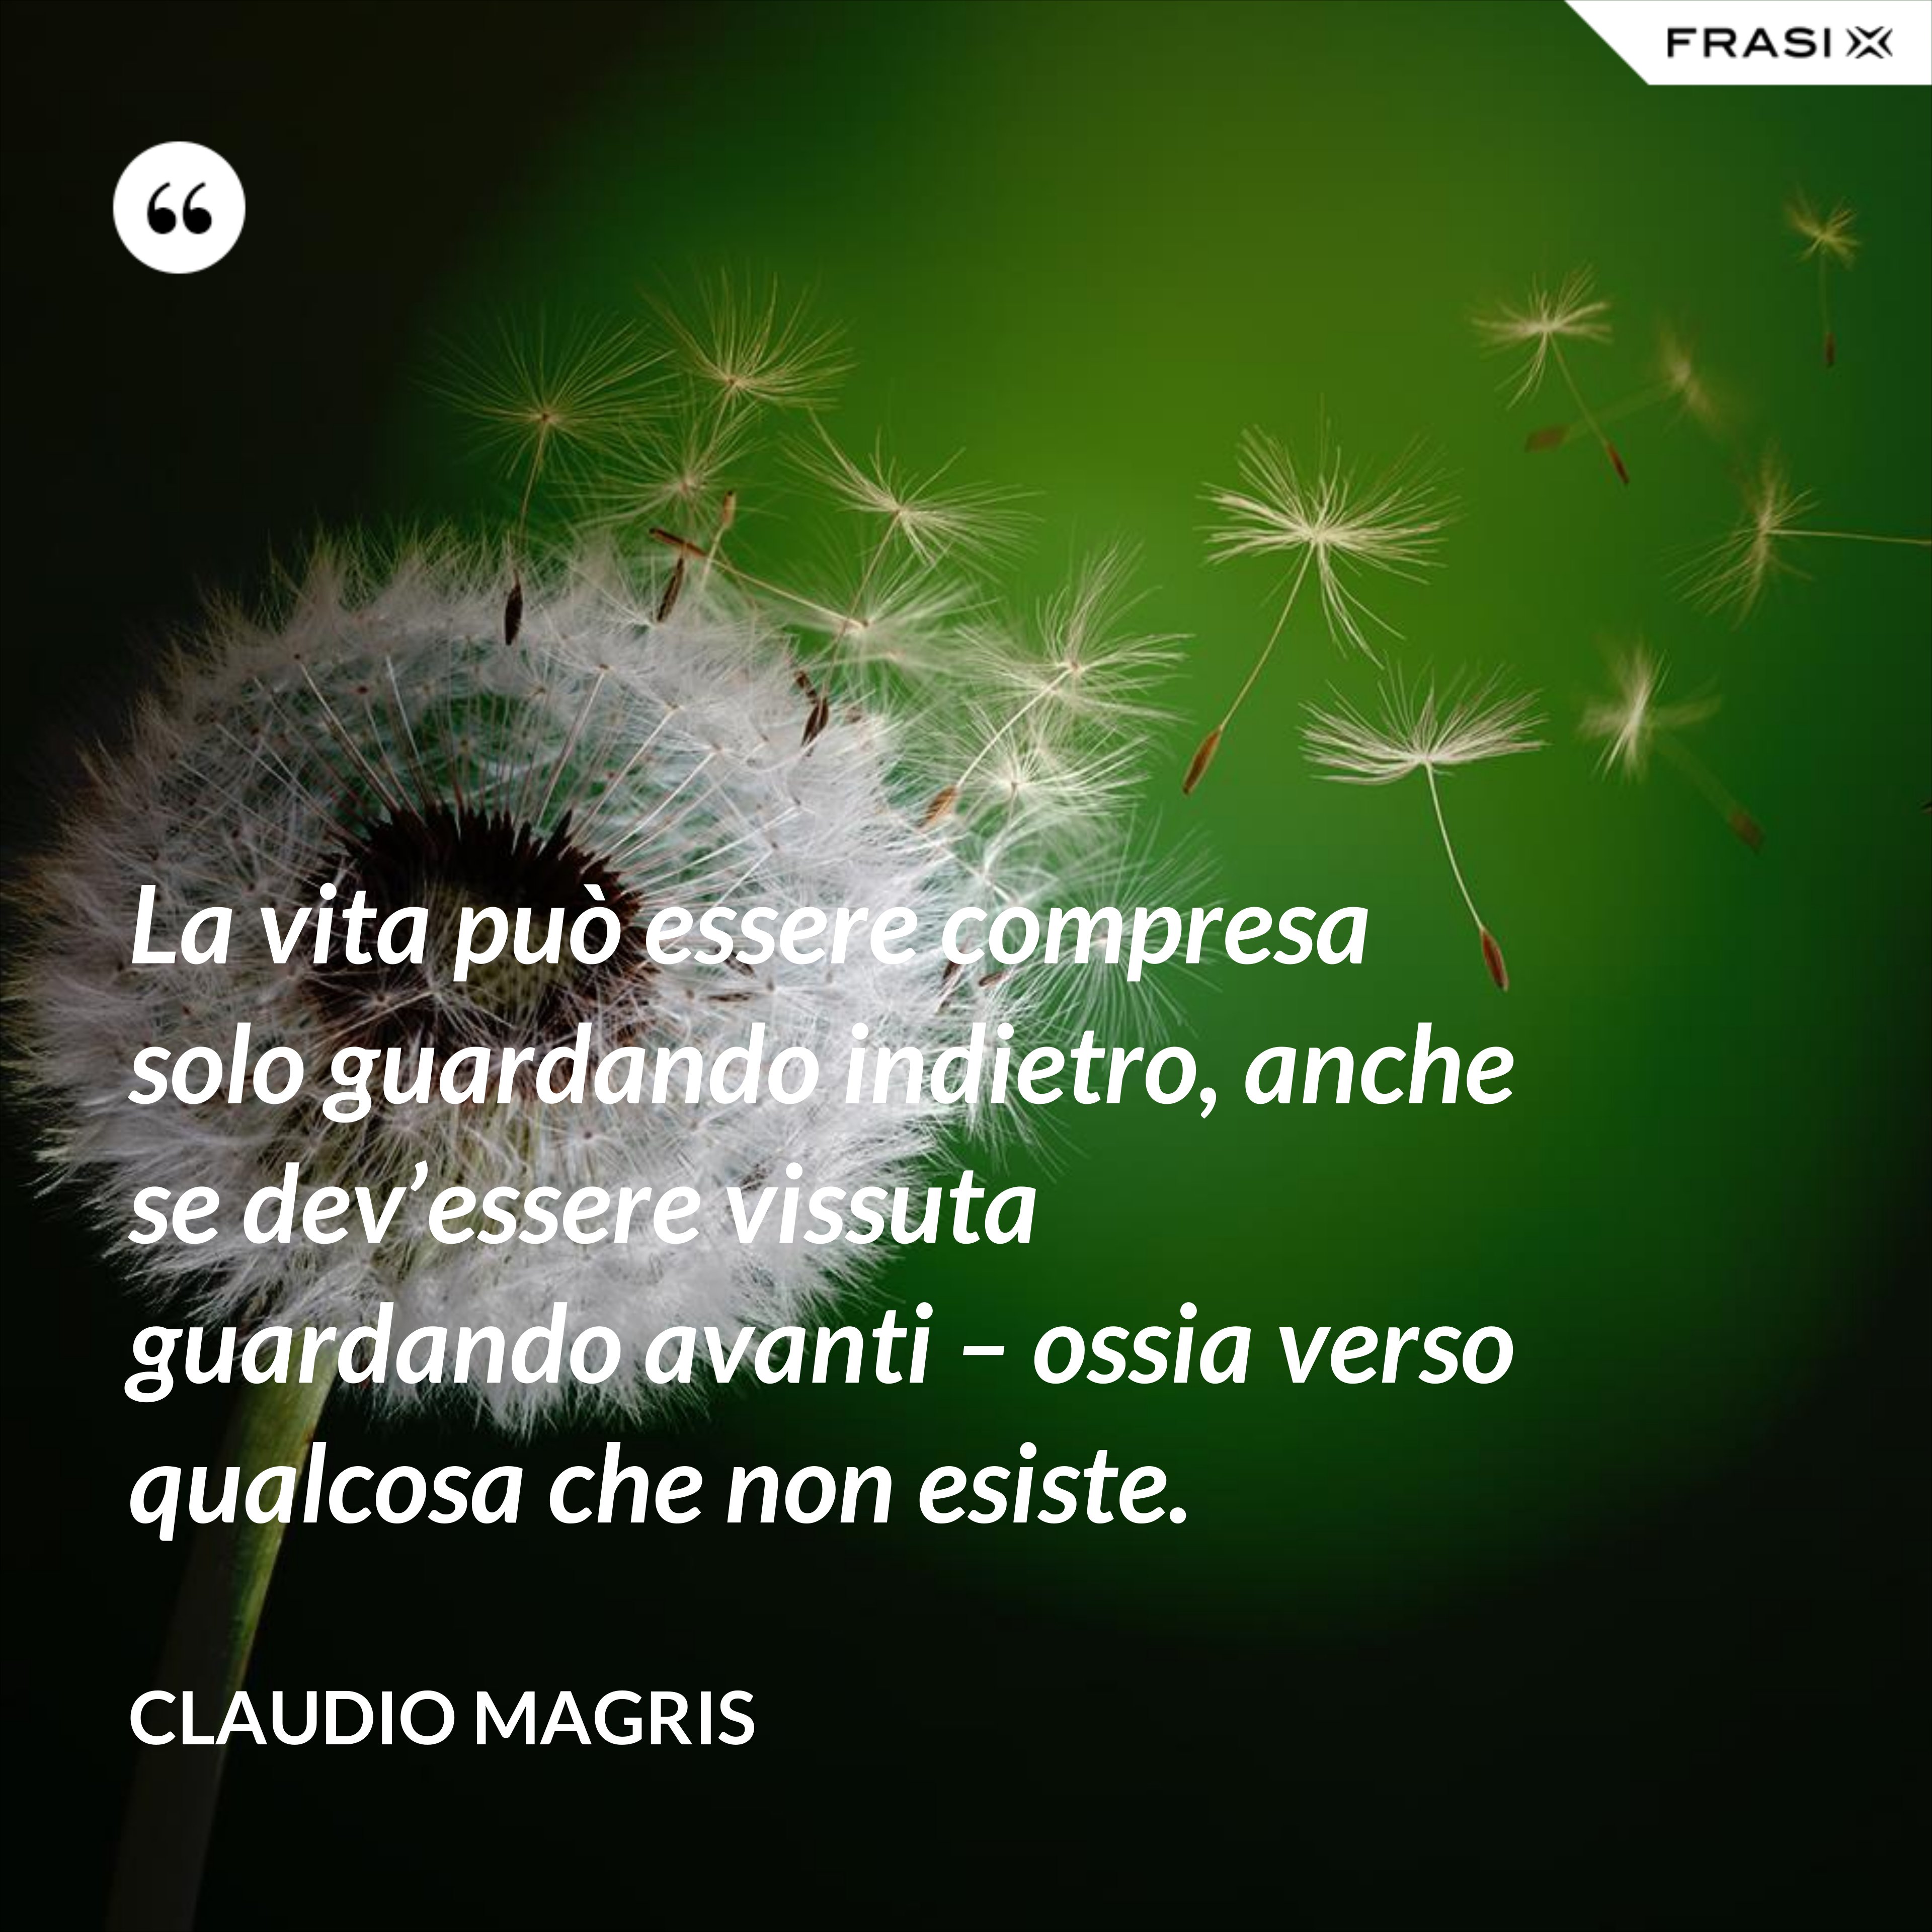 La vita può essere compresa solo guardando indietro, anche se dev’essere vissuta guardando avanti – ossia verso qualcosa che non esiste. - Claudio Magris